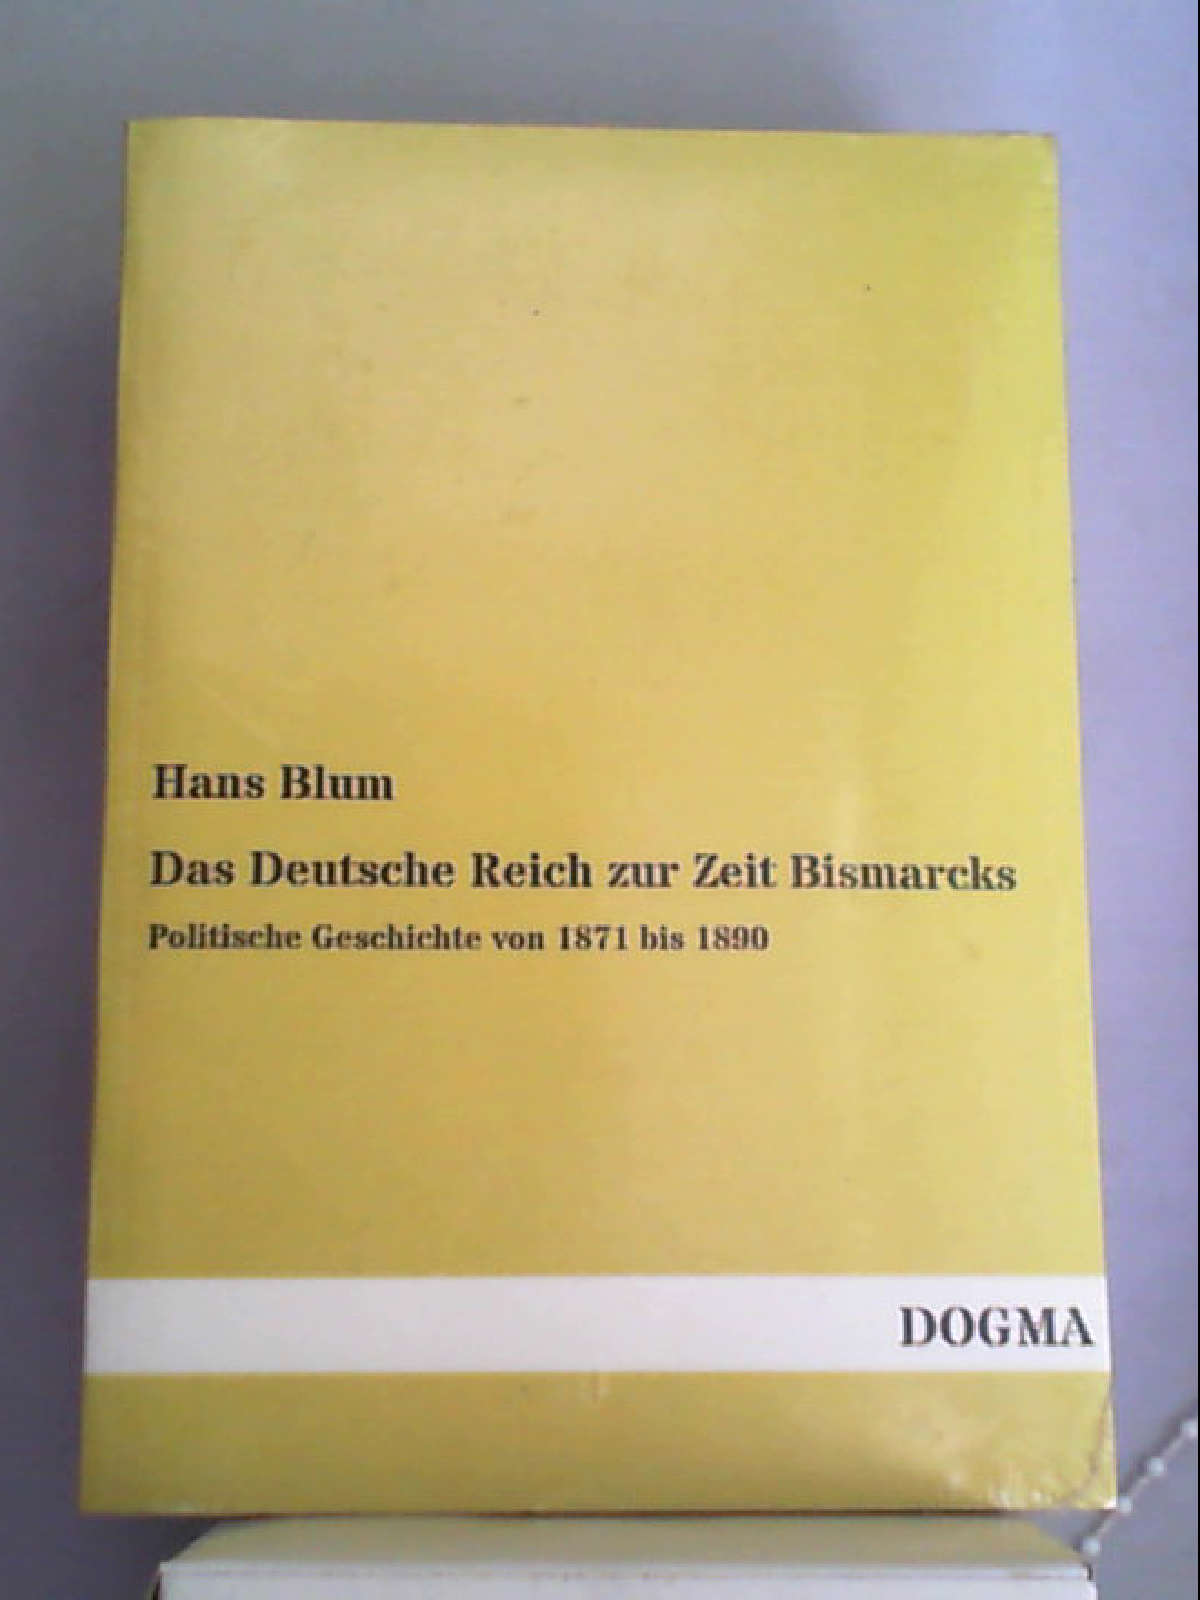 Das Deutsche Reich zur Zeit Bismarcks: Politische Geschichte von 1871 bis 1890 (Classic Reprint) [Paperback] [Mar 03, 2018] Blum, Hans - Hans Blum